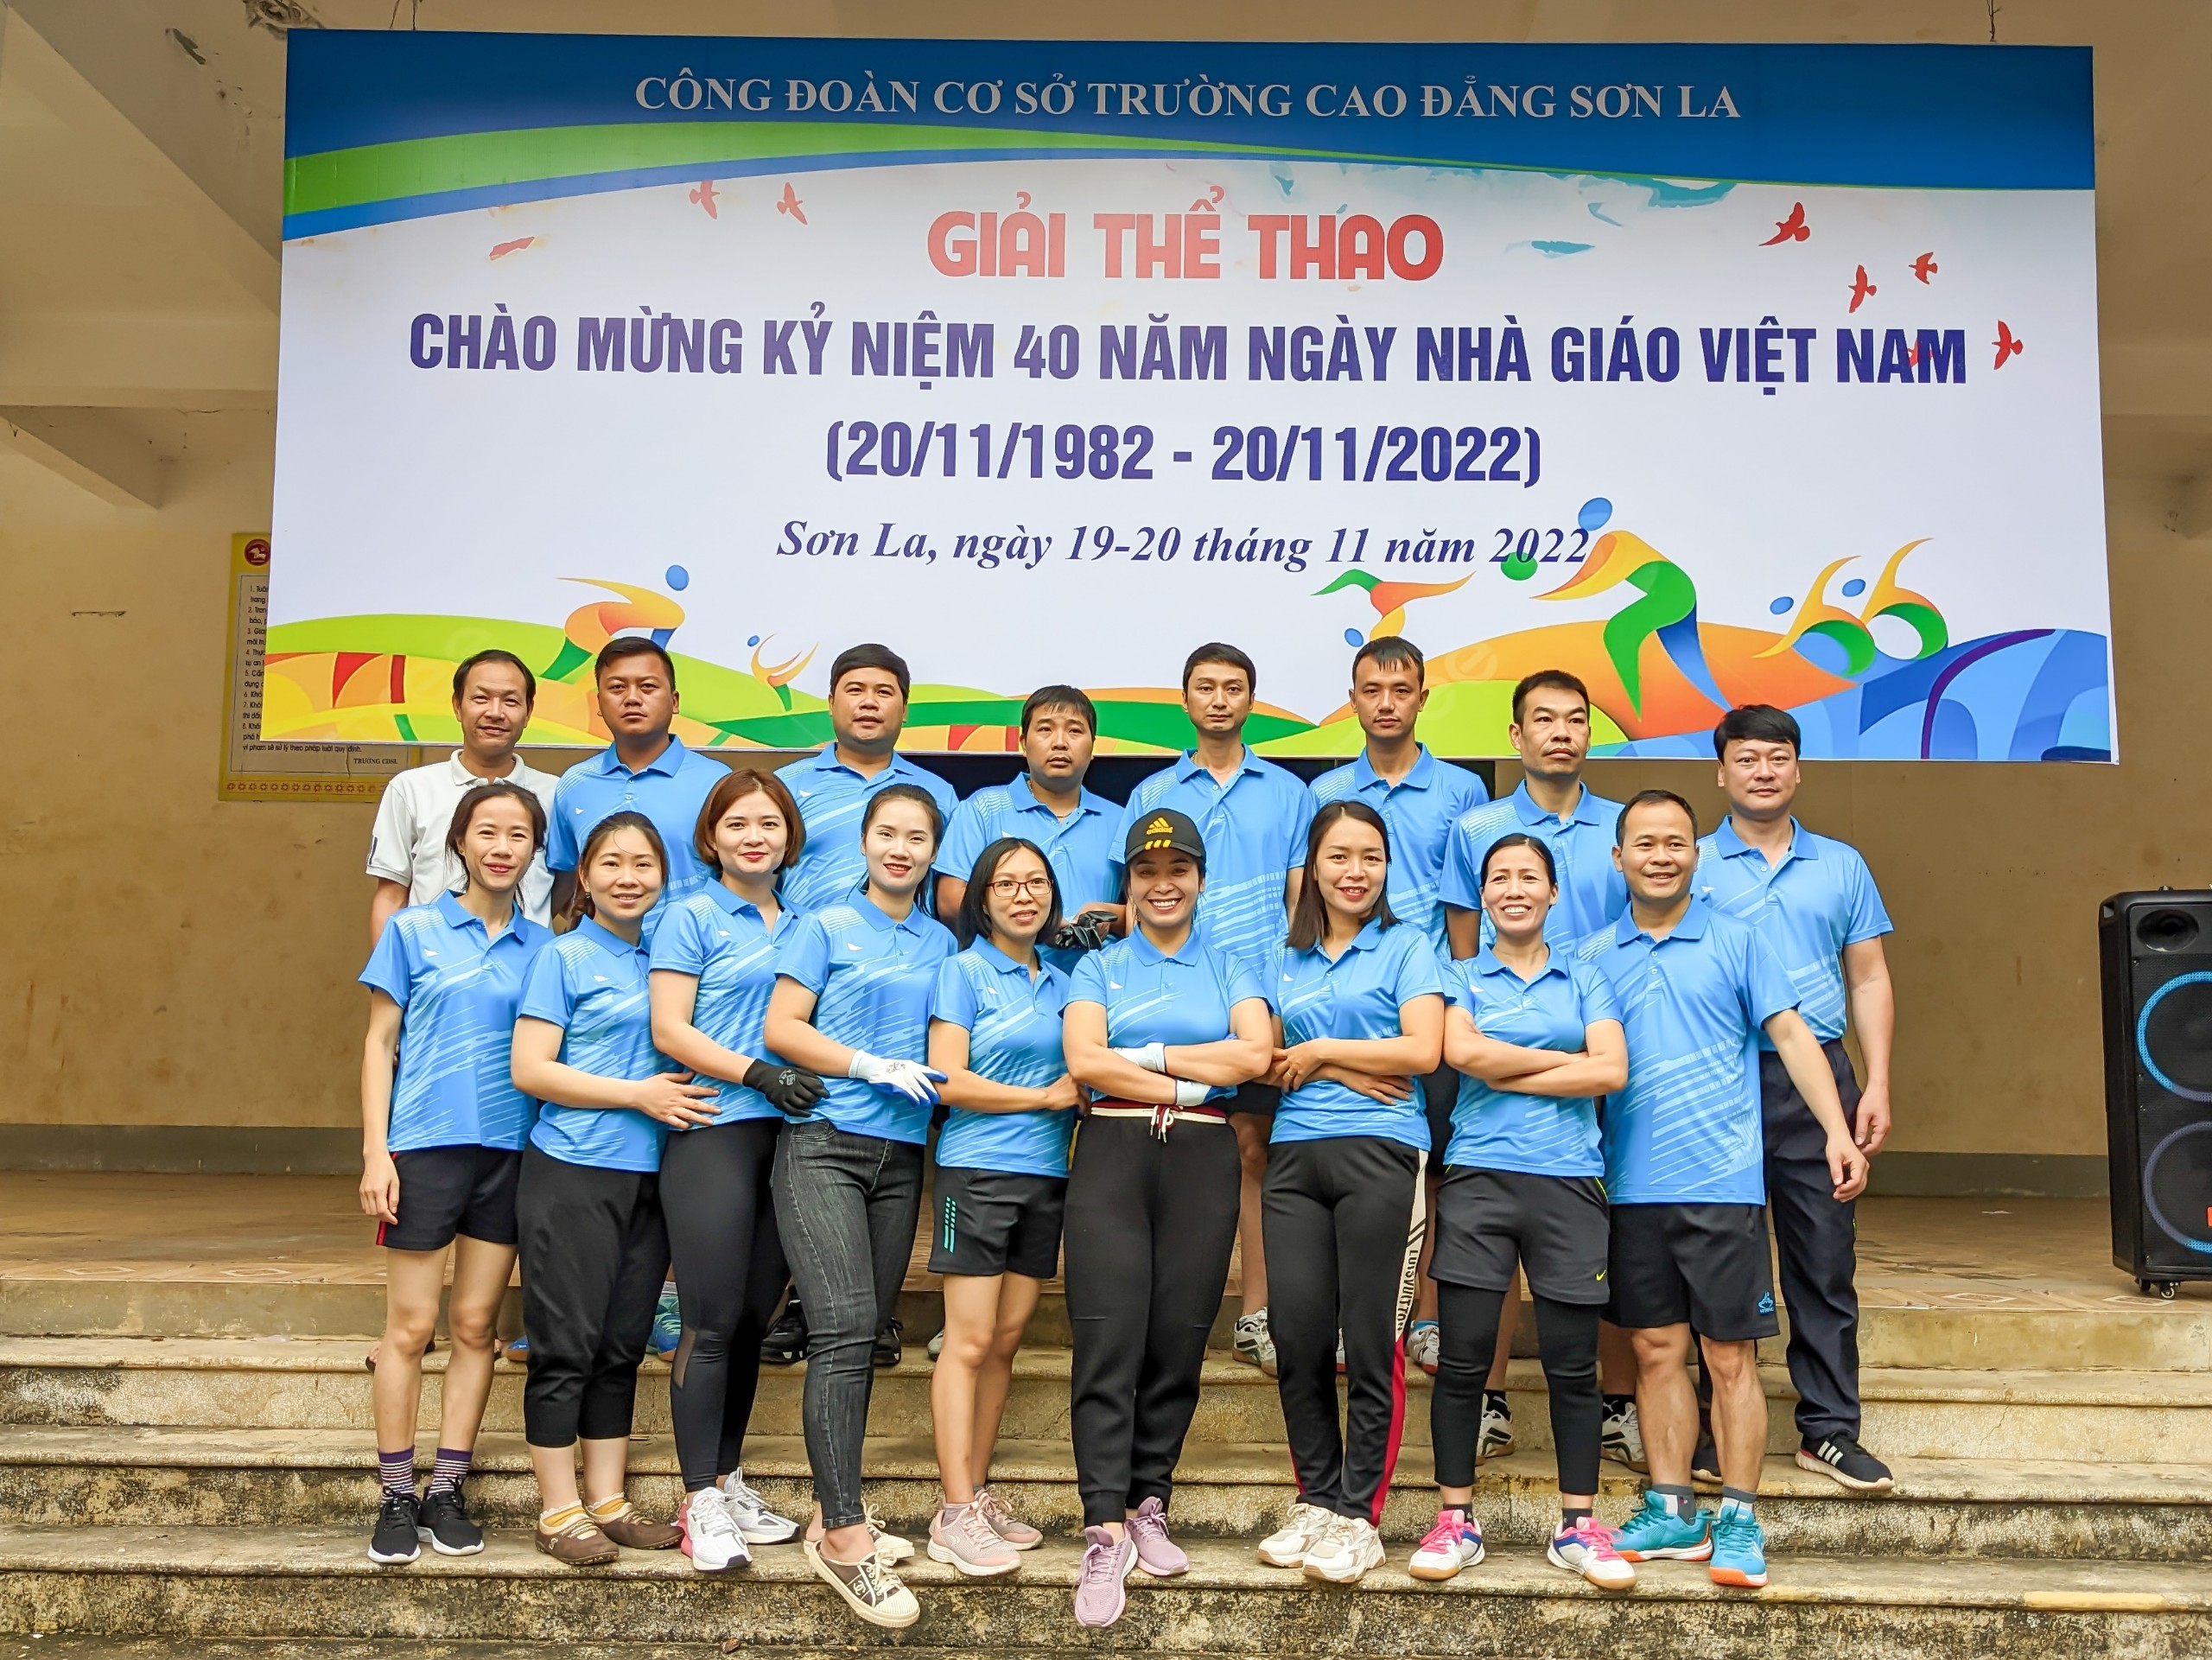 CBVC Công đoàn 4 - Phòng CTHSSV tham gia Giải thể thao chào mừng kỷ niệm 40 năm Ngày nhà giáo Việt Nam